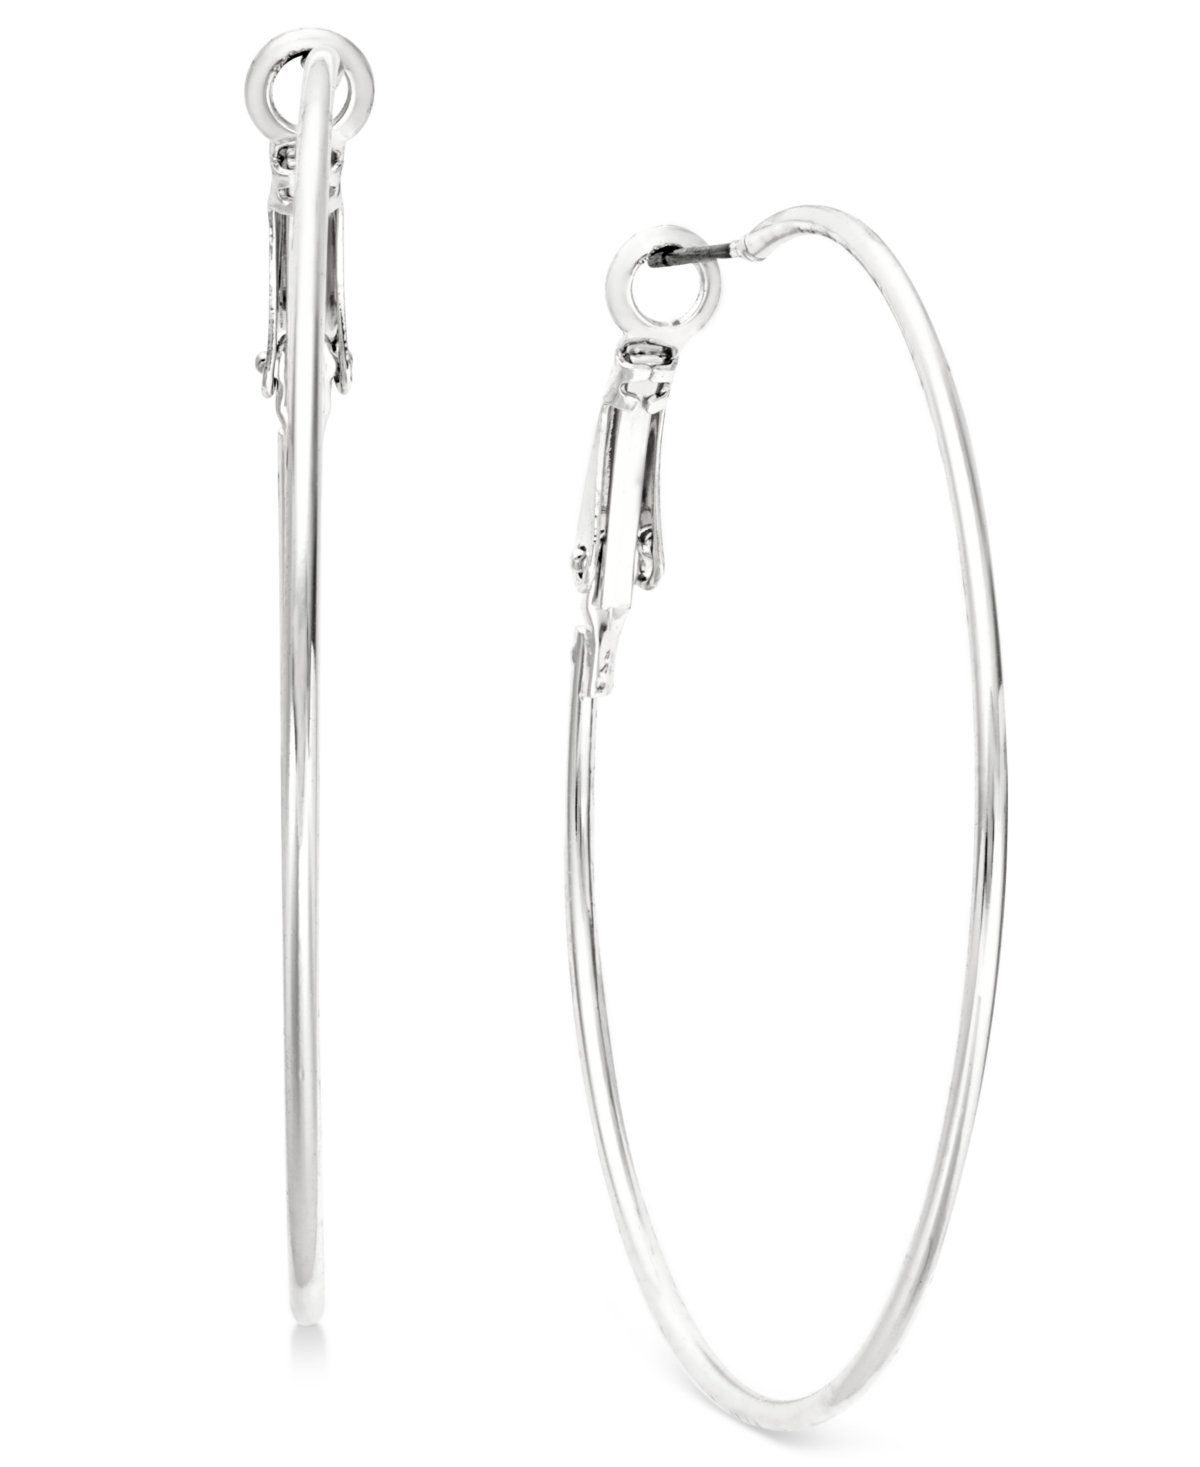 Silver-Tone Slim Hoop Earrings 1-3/4", Created for Macy's - Silver